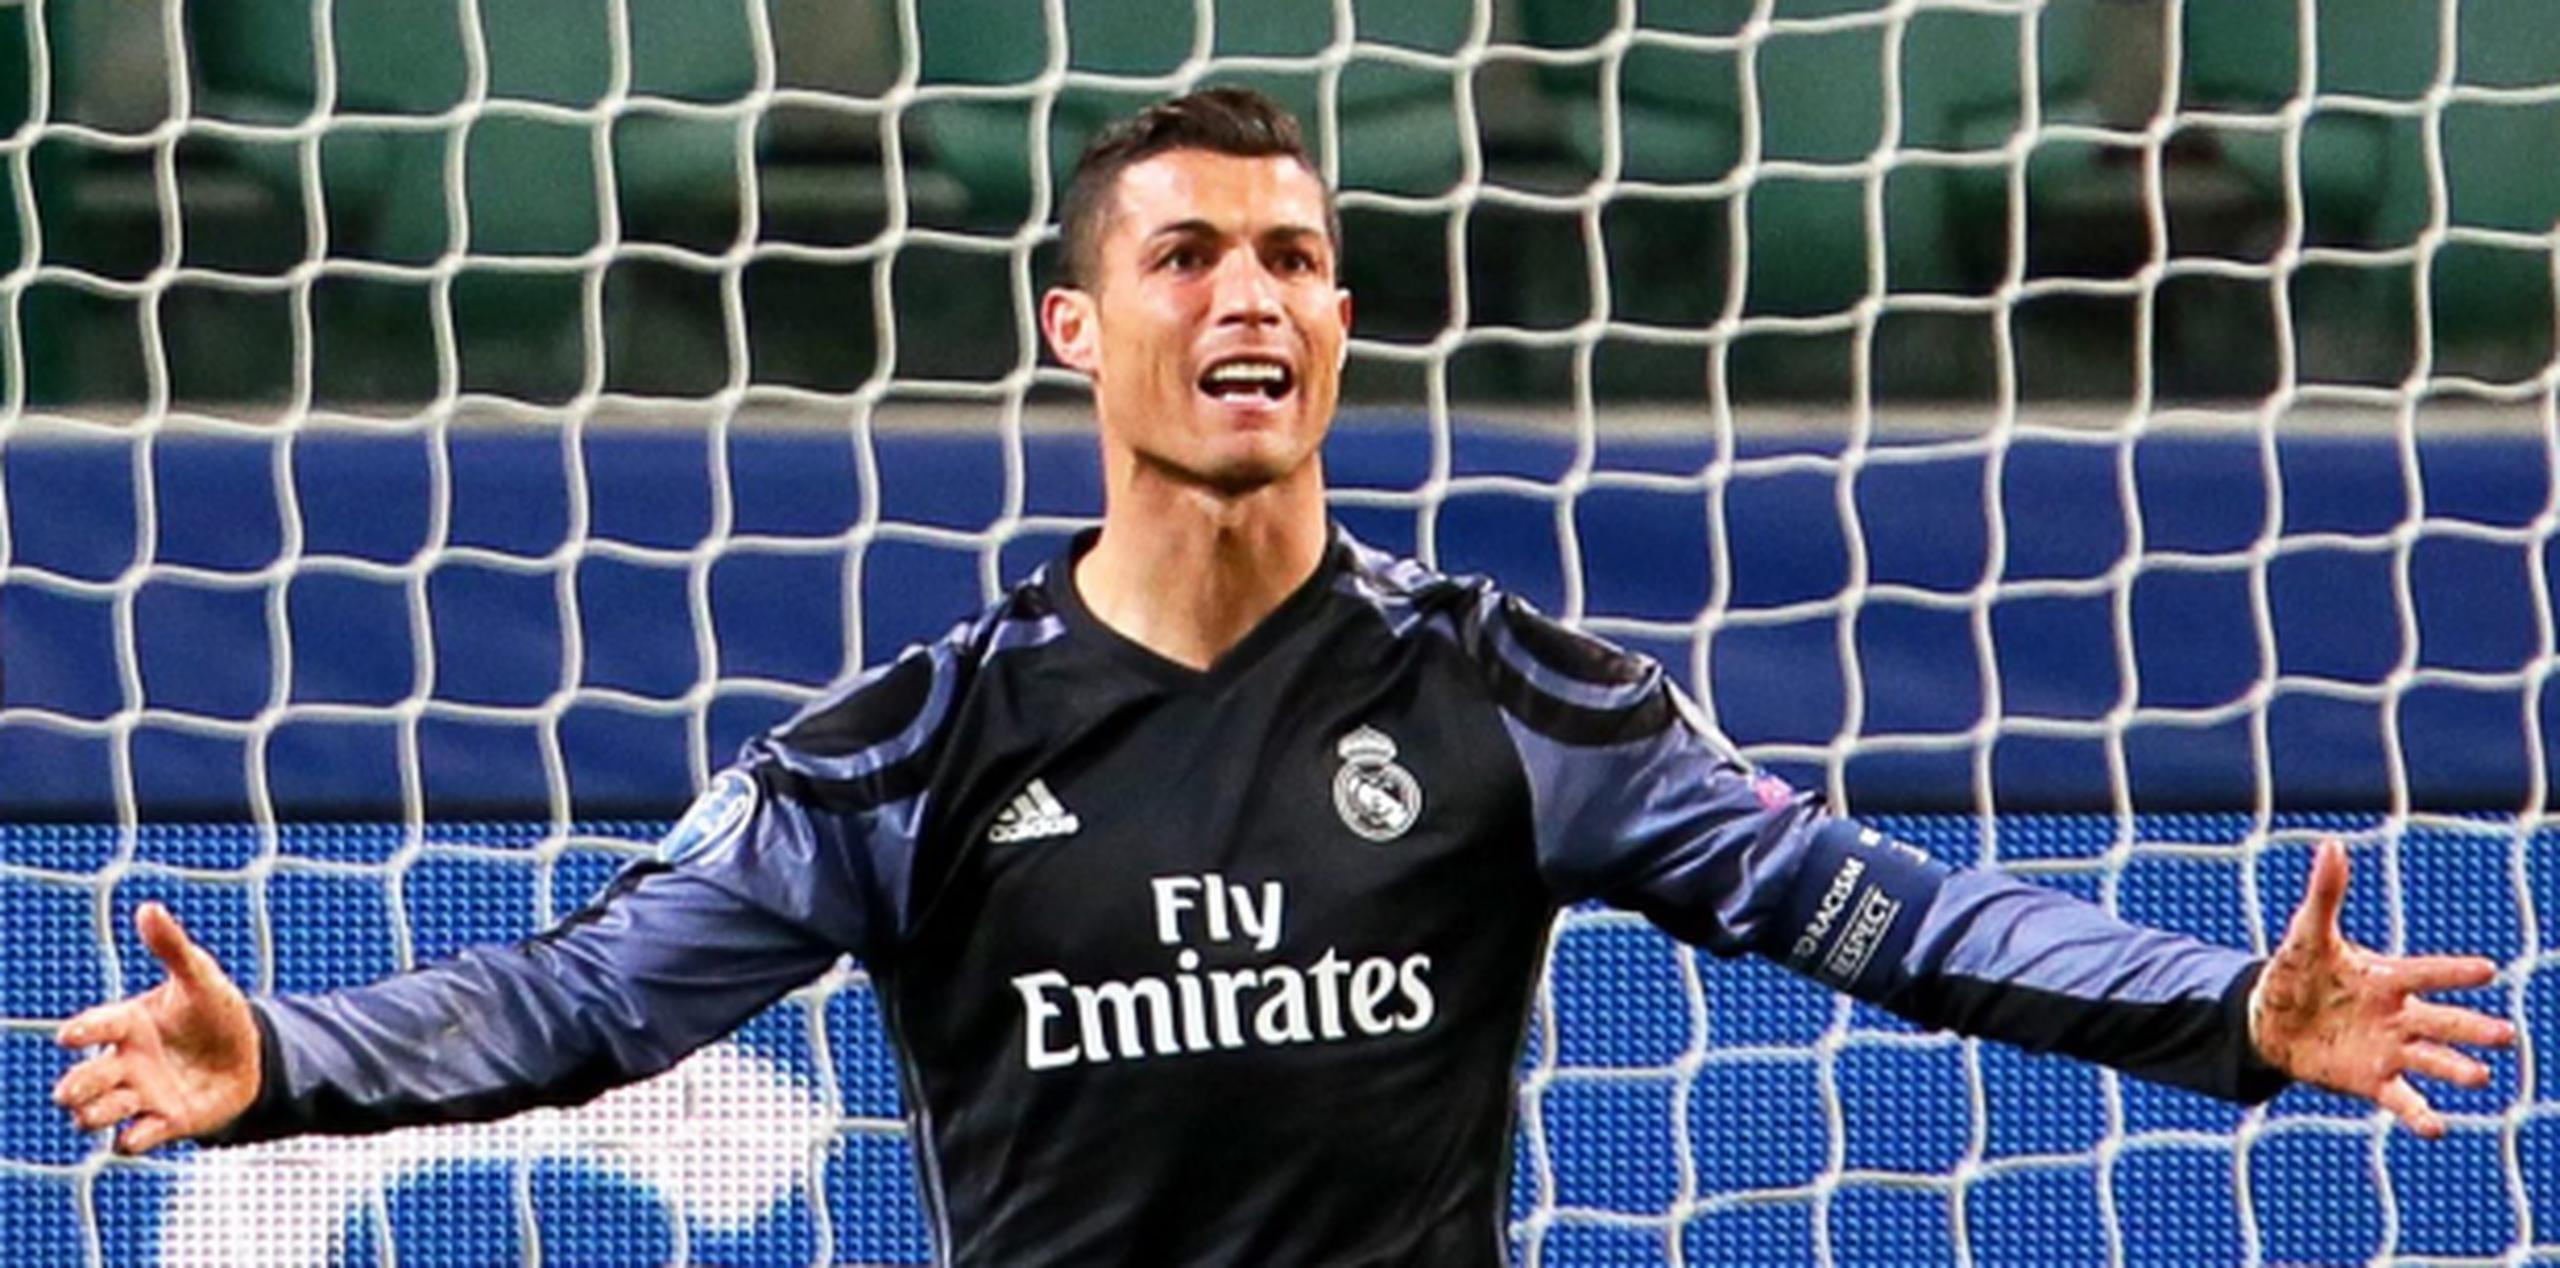 Se da por descontado que Cristiano Ronaldo será el jugador mejor pagado del equipo. (Foto/Prensa Asociada)